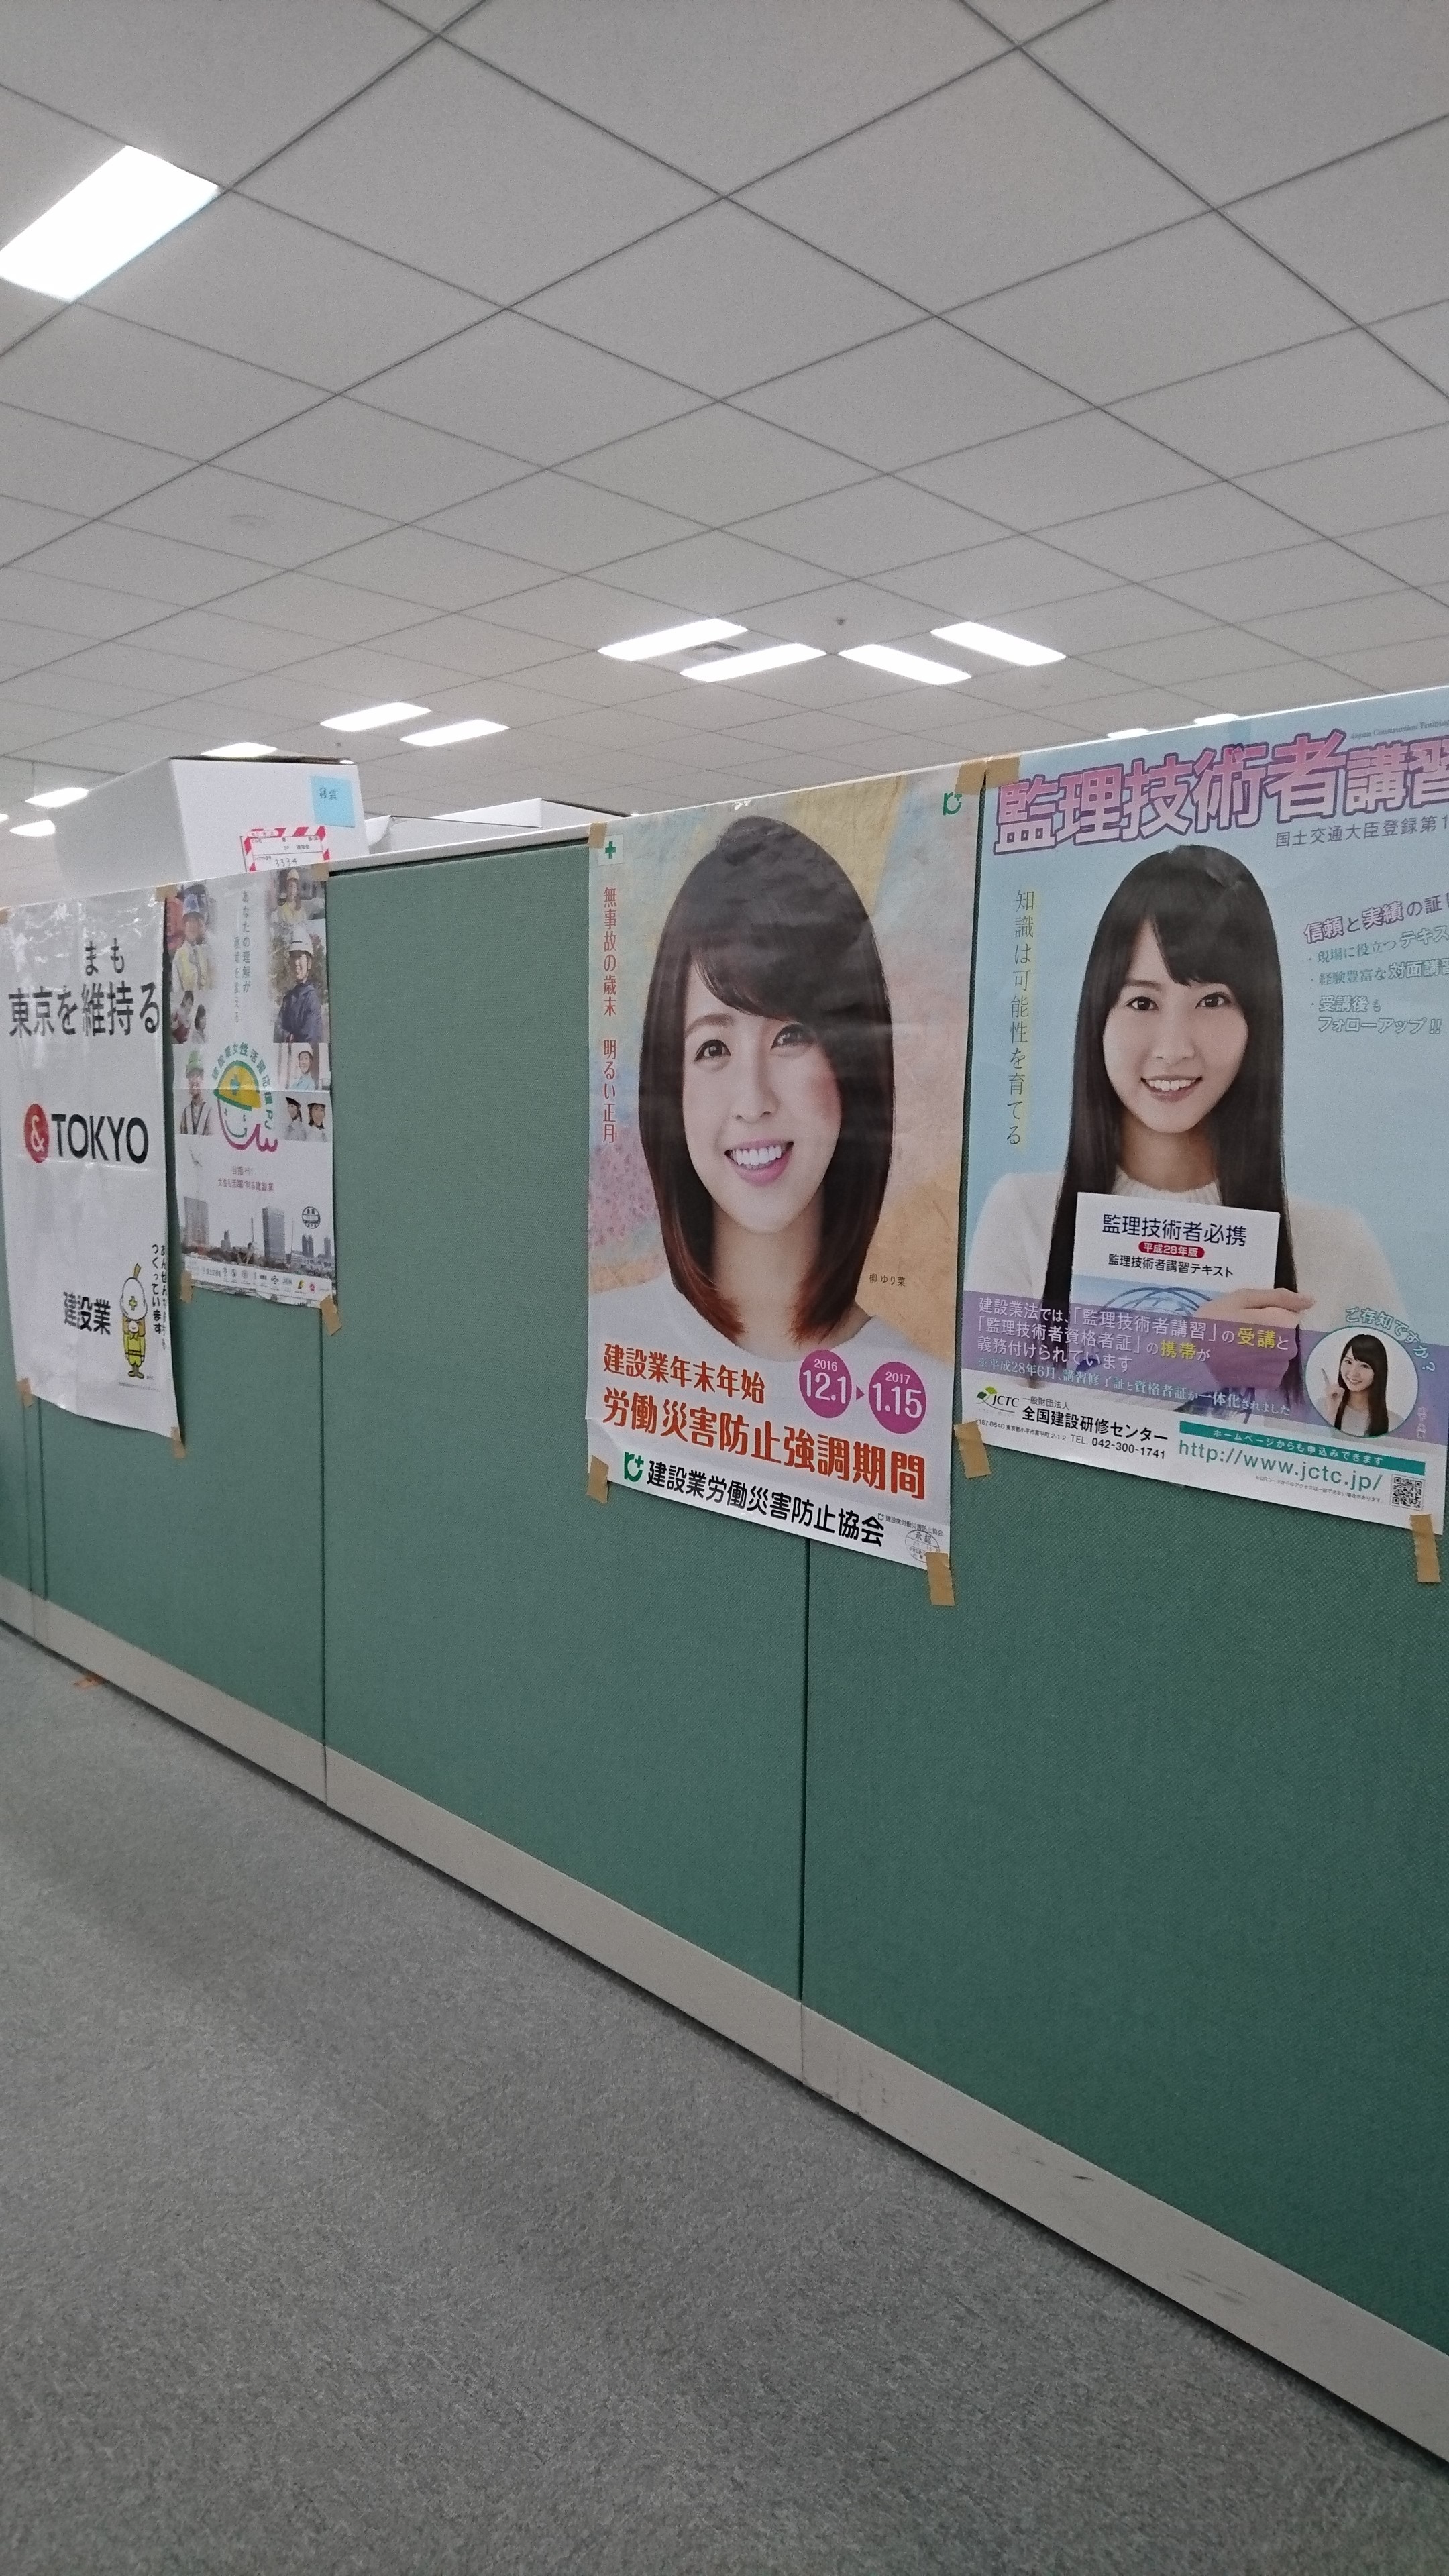 東京都建設業課待合にて。役所でよく見るレイアウトのポスターですね…